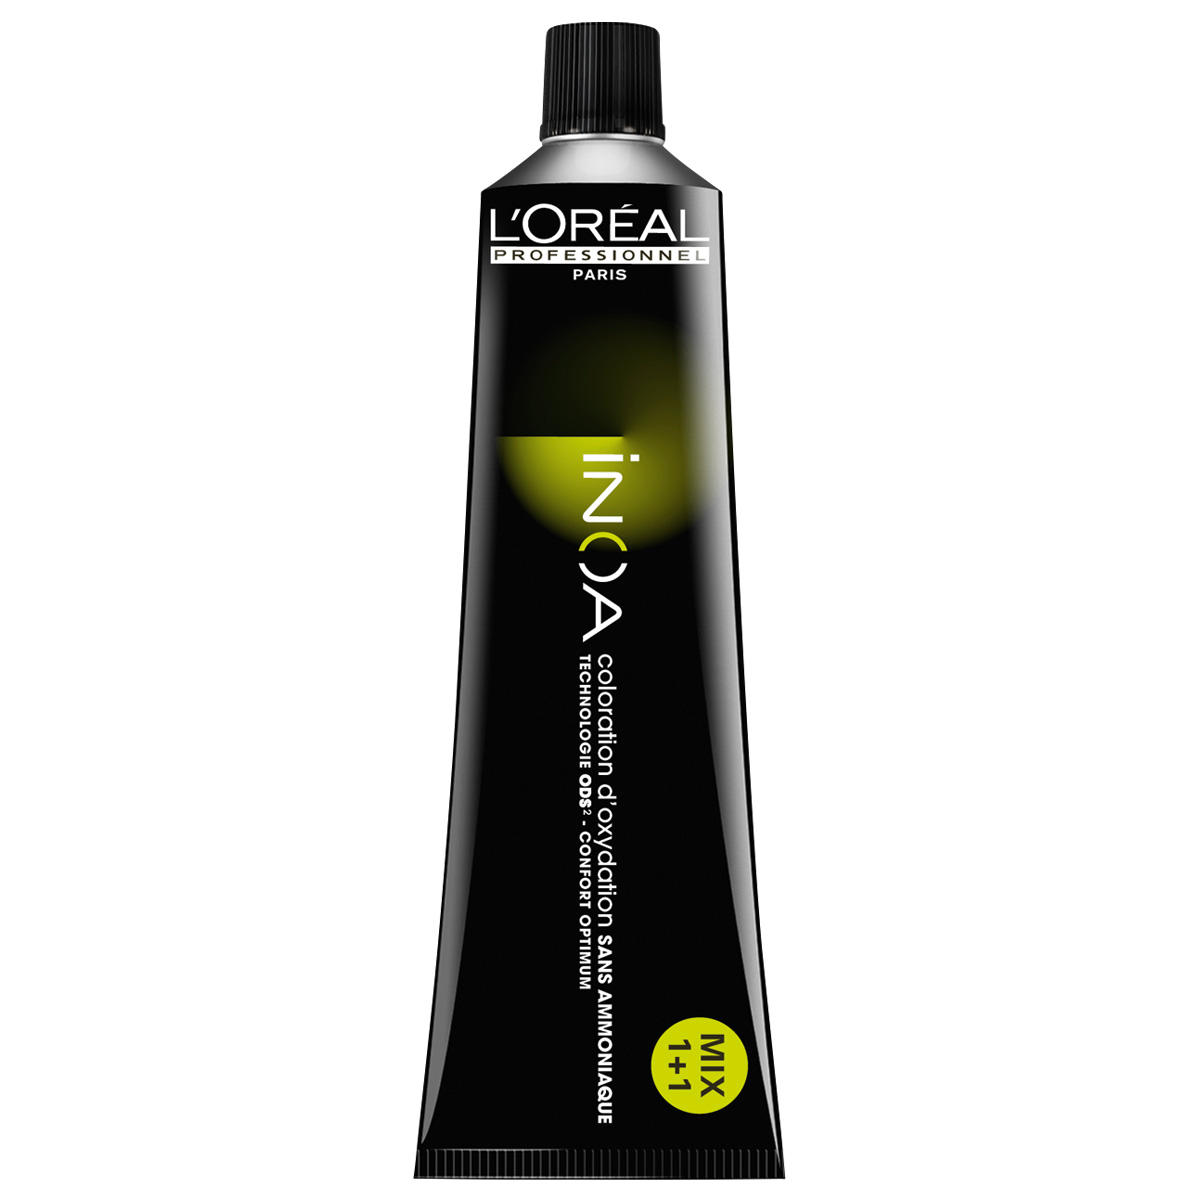 L'Oréal Professionnel Paris Coloration 7.1 Medium Blond Ash, Tube 60 ml - 1